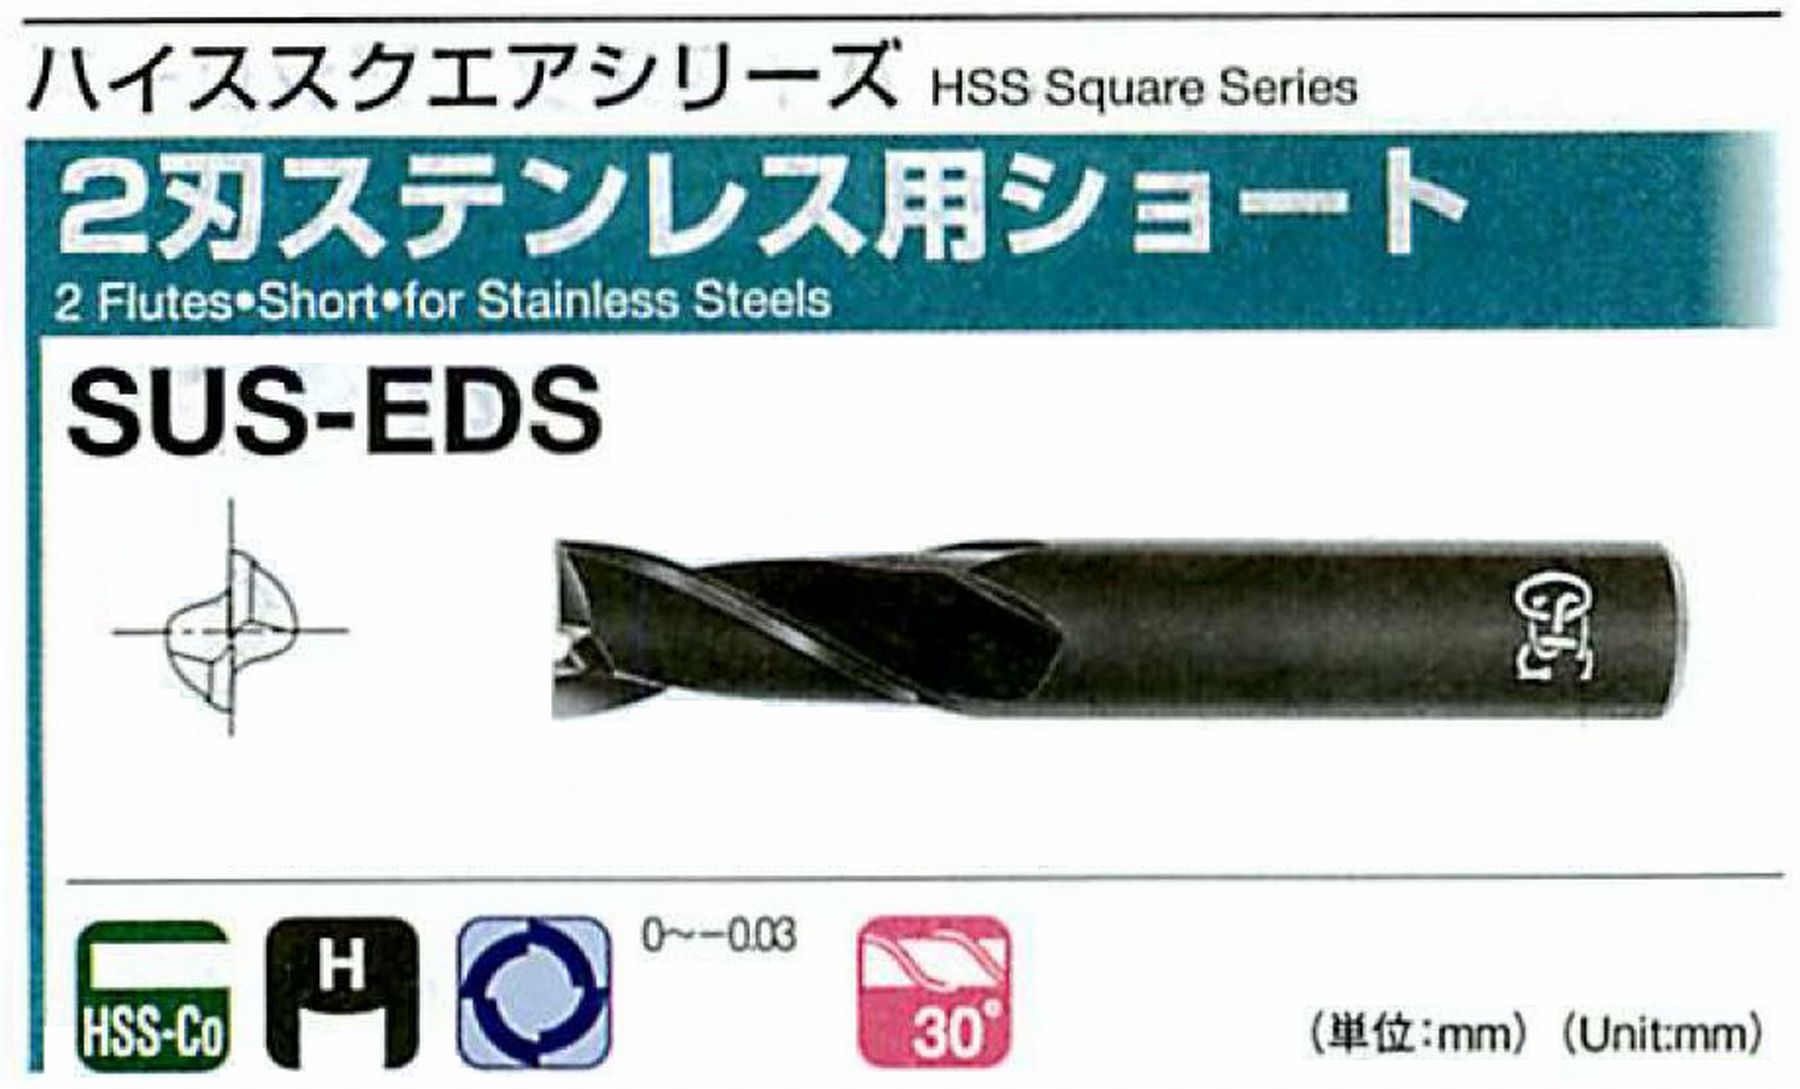 オーエスジー/OSG 2刃ステンレス用ショート SUS-EDS 外径4.5 全長60 刃長10 シャンク径8mm